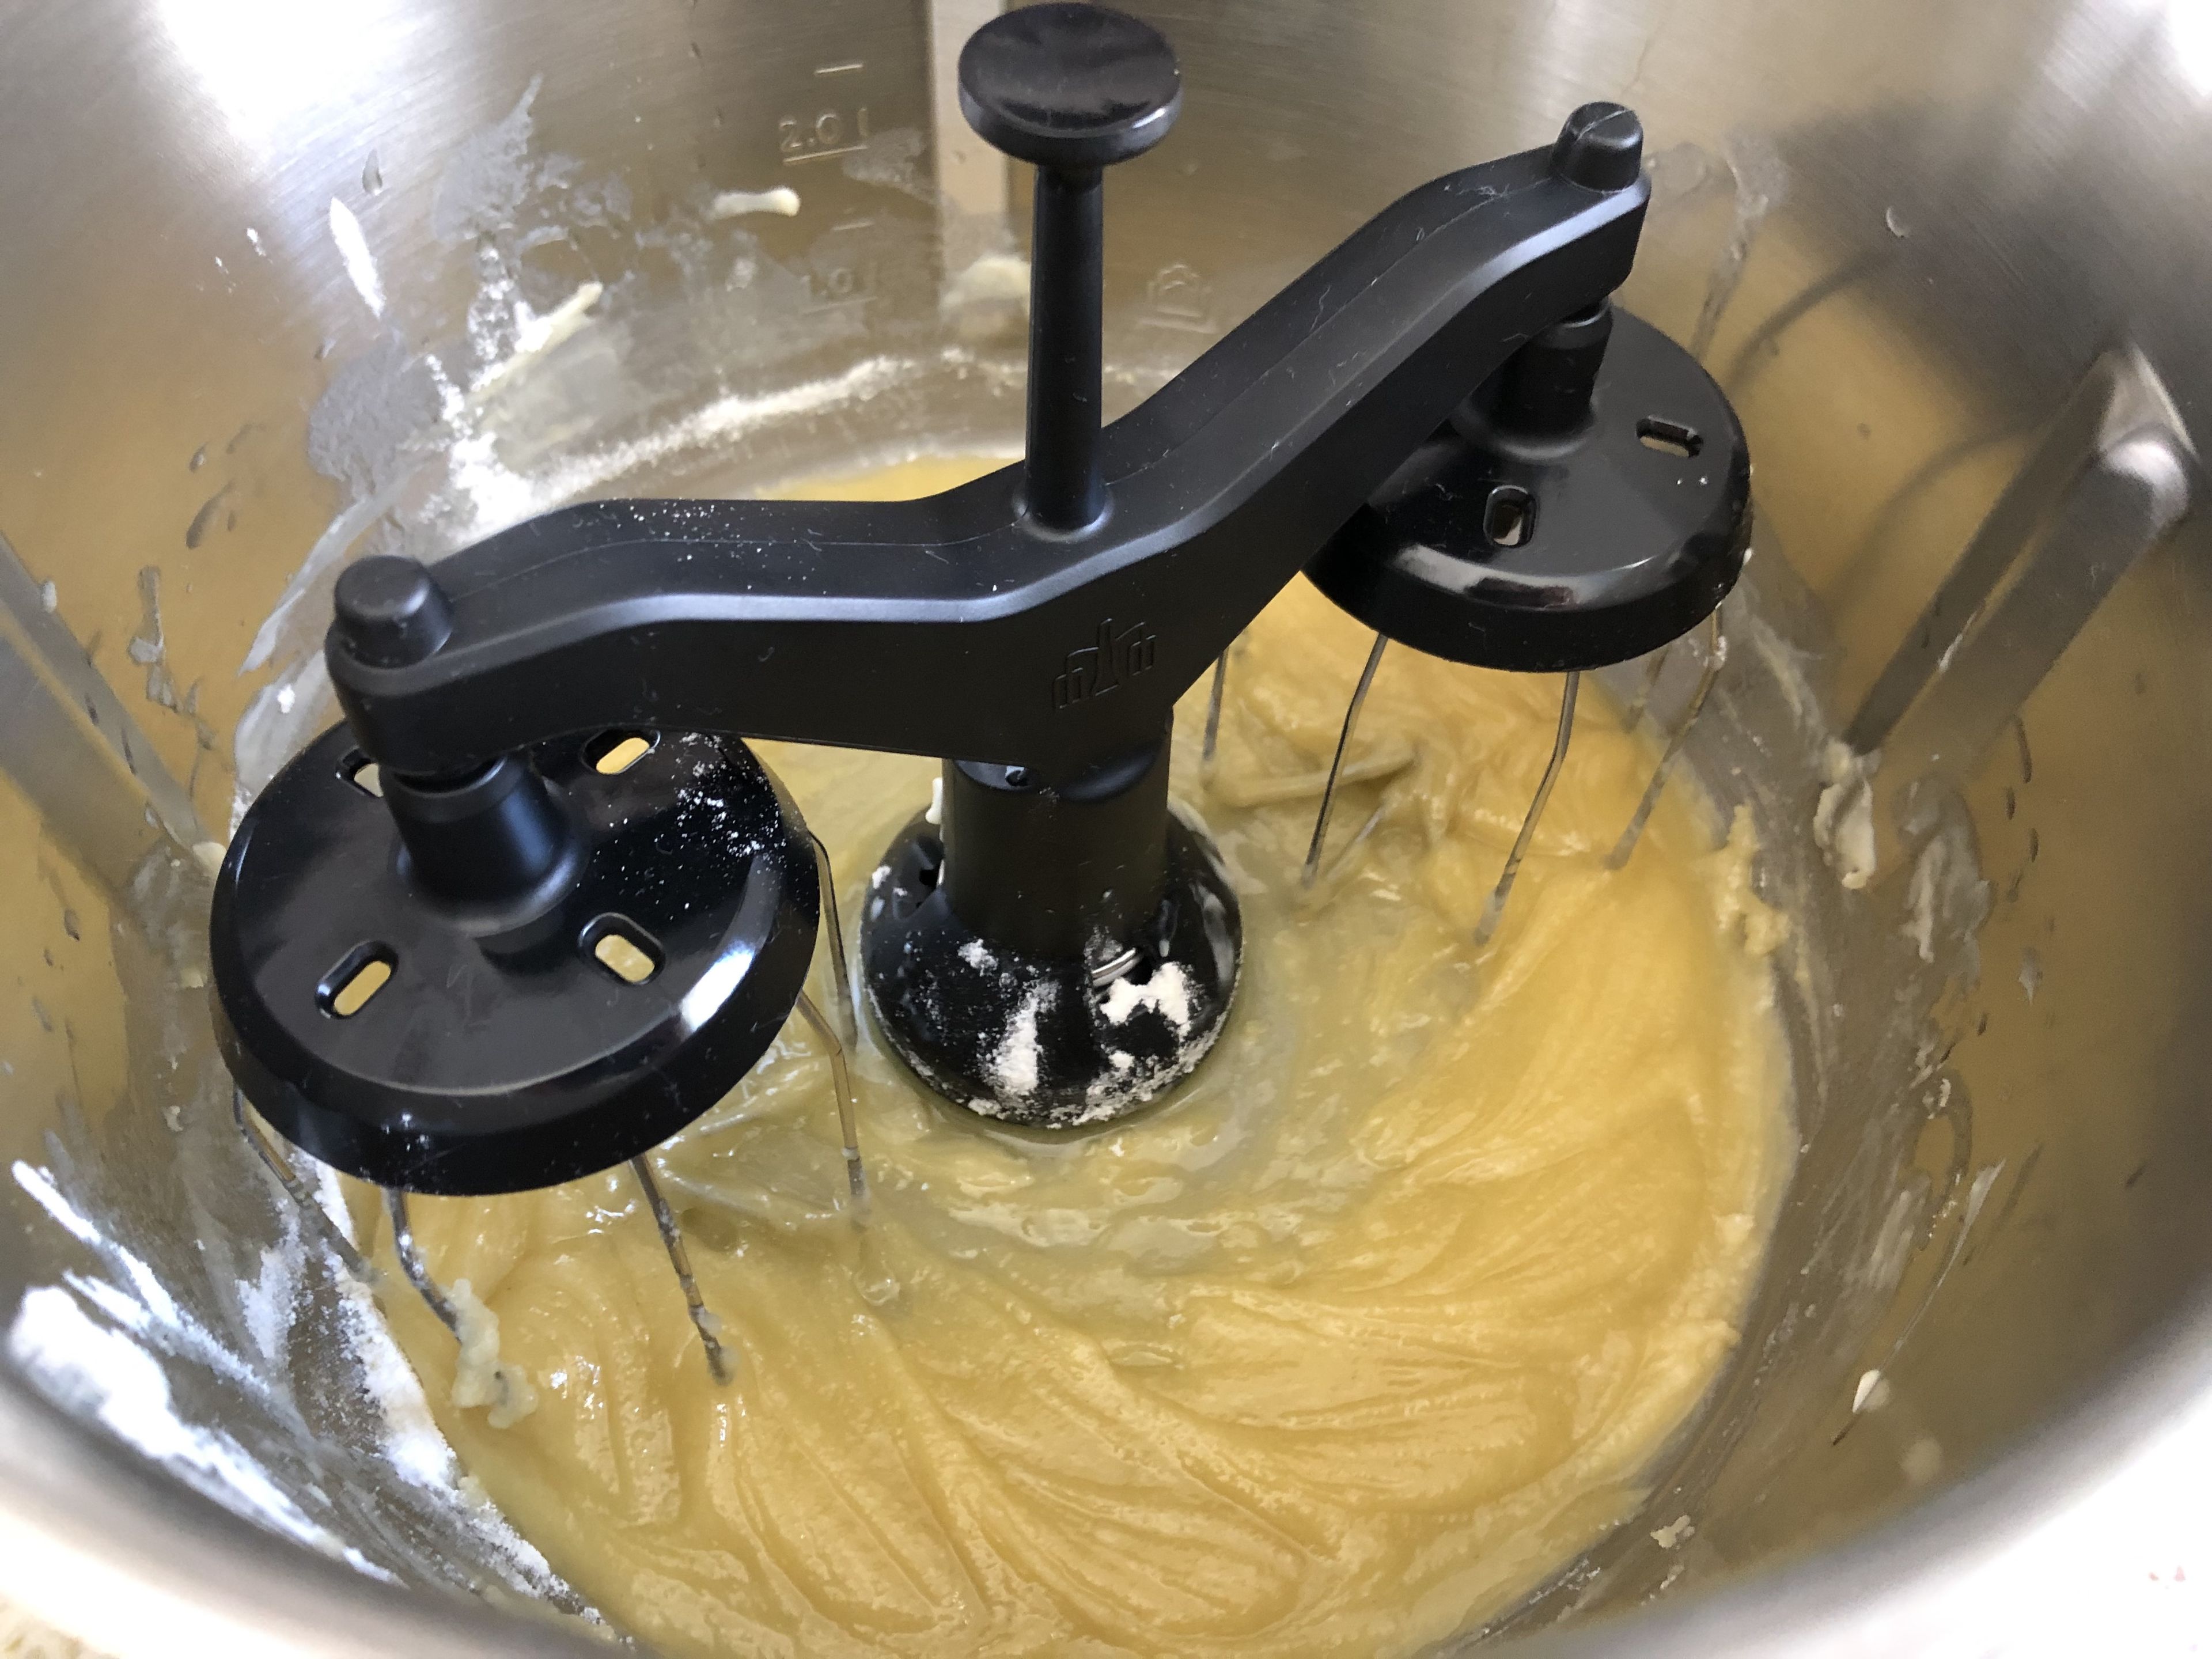 Den Zwillingsrührbesen in den Cookit einsetzen. Die Butter in kleine Stücke teilen und im Cookit einwiegen. Bei 40 Grad auf Stufe 2 ca. 3 Minuten schmelzen, bis die gesamte Butter flüssig ist. Nun das Mehl einwiegen. Ca. 2 Minuten weiterrühren, bis eine gleichmäßige Mehlschwitze entstanden ist. 
 (Zwillingsrührbesen | Stufe 2 | 40°C | 5:00 Min)